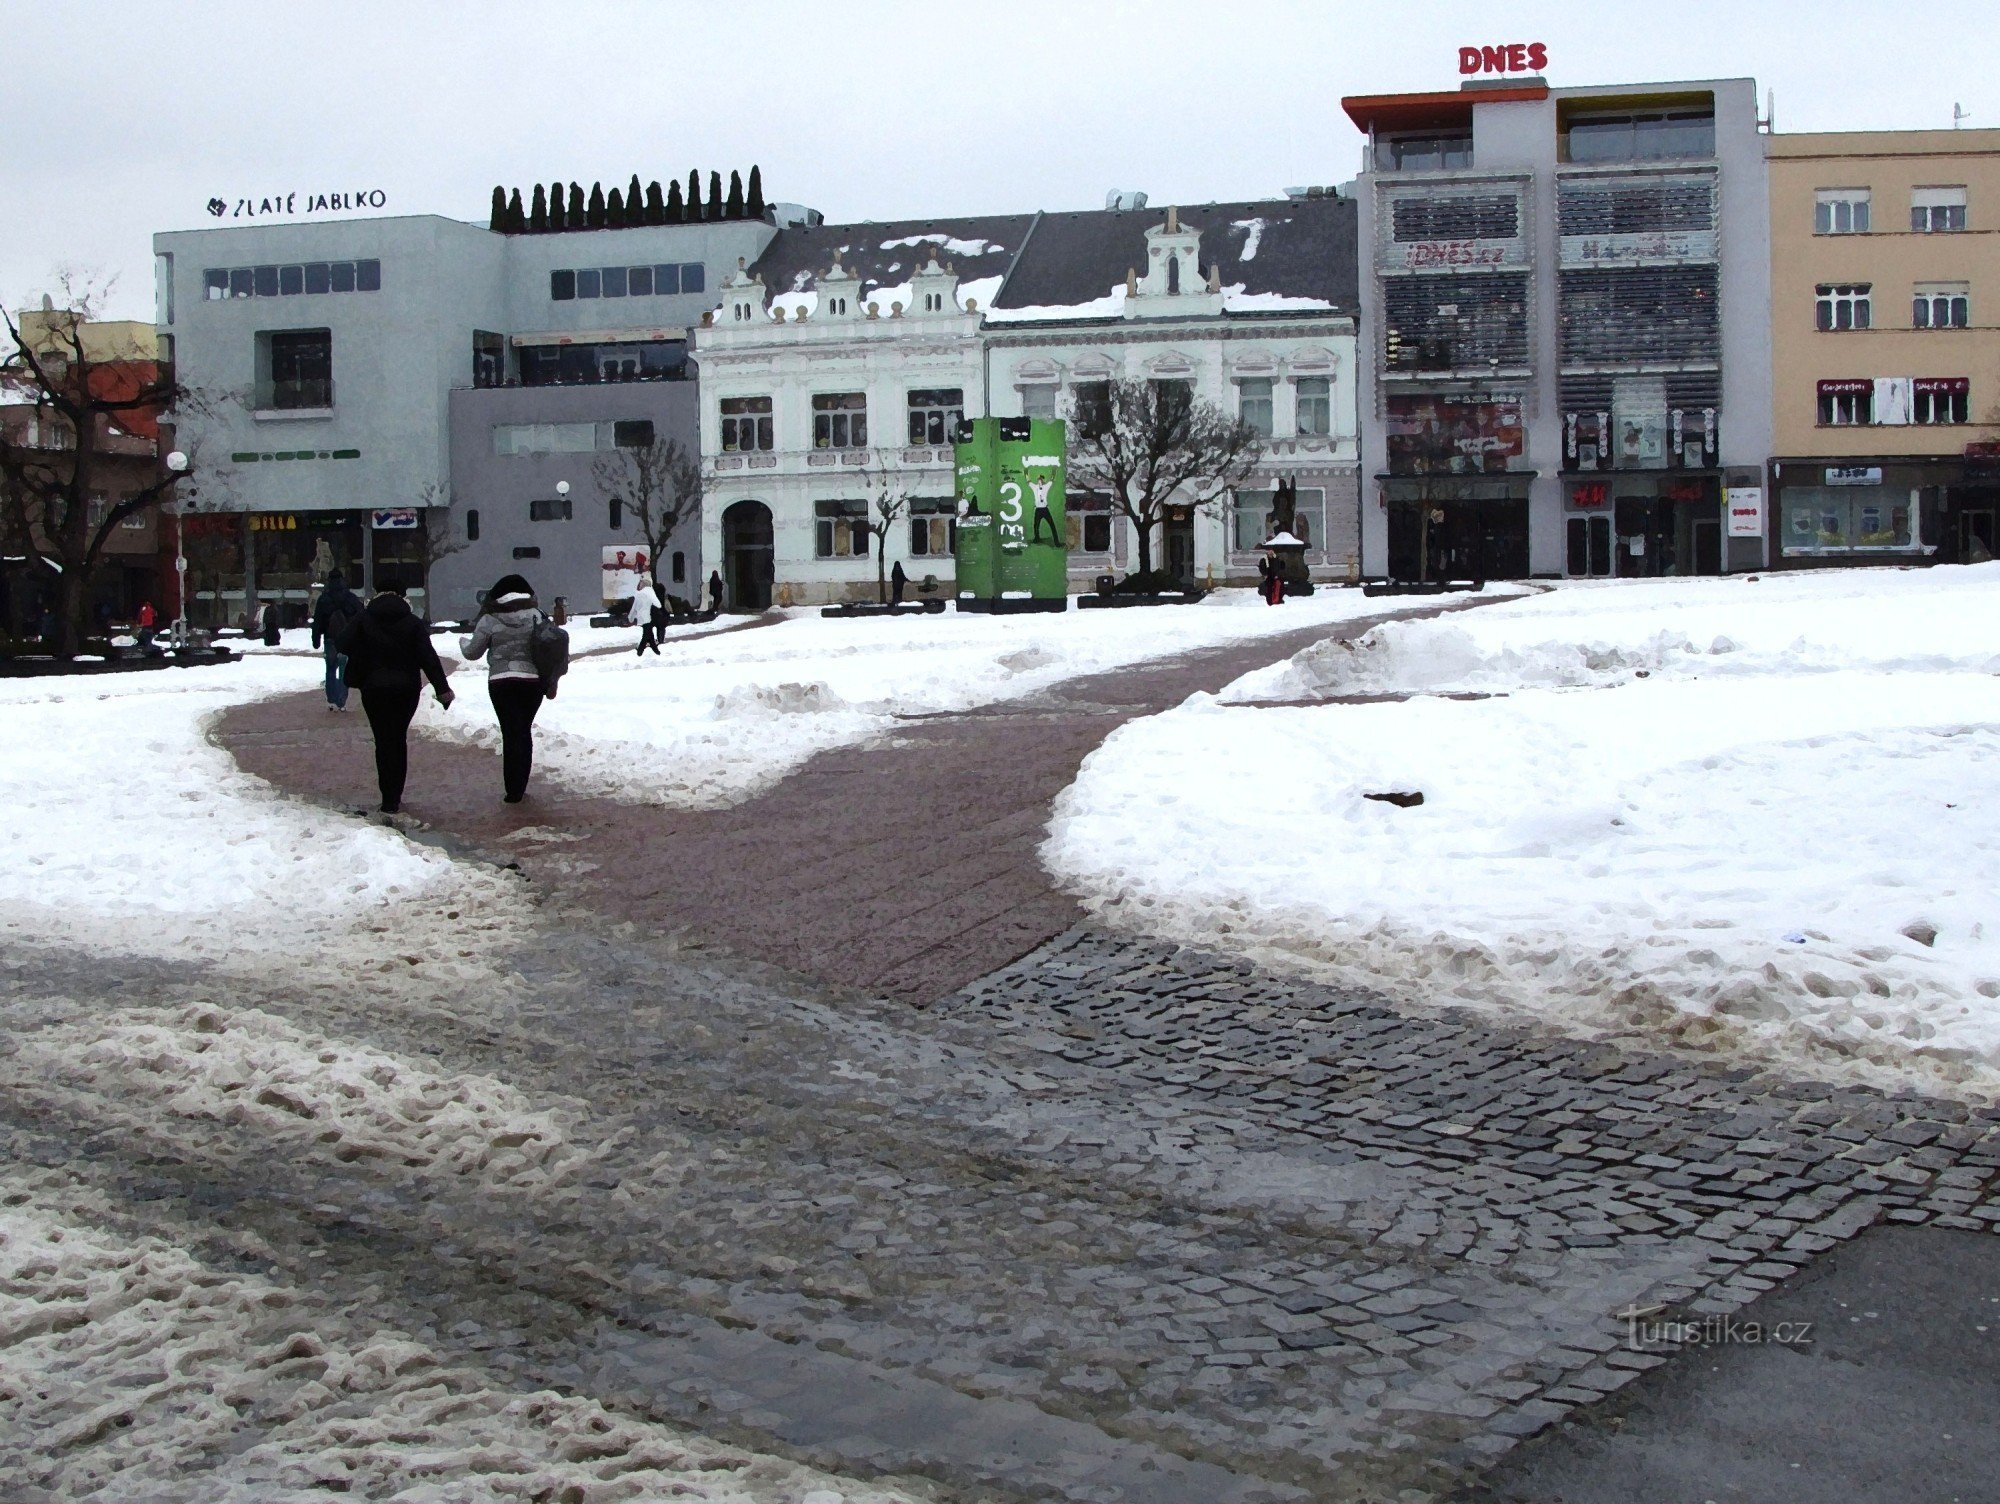 Κεντρική πλατεία του Zlín - Πλατεία Ειρήνης